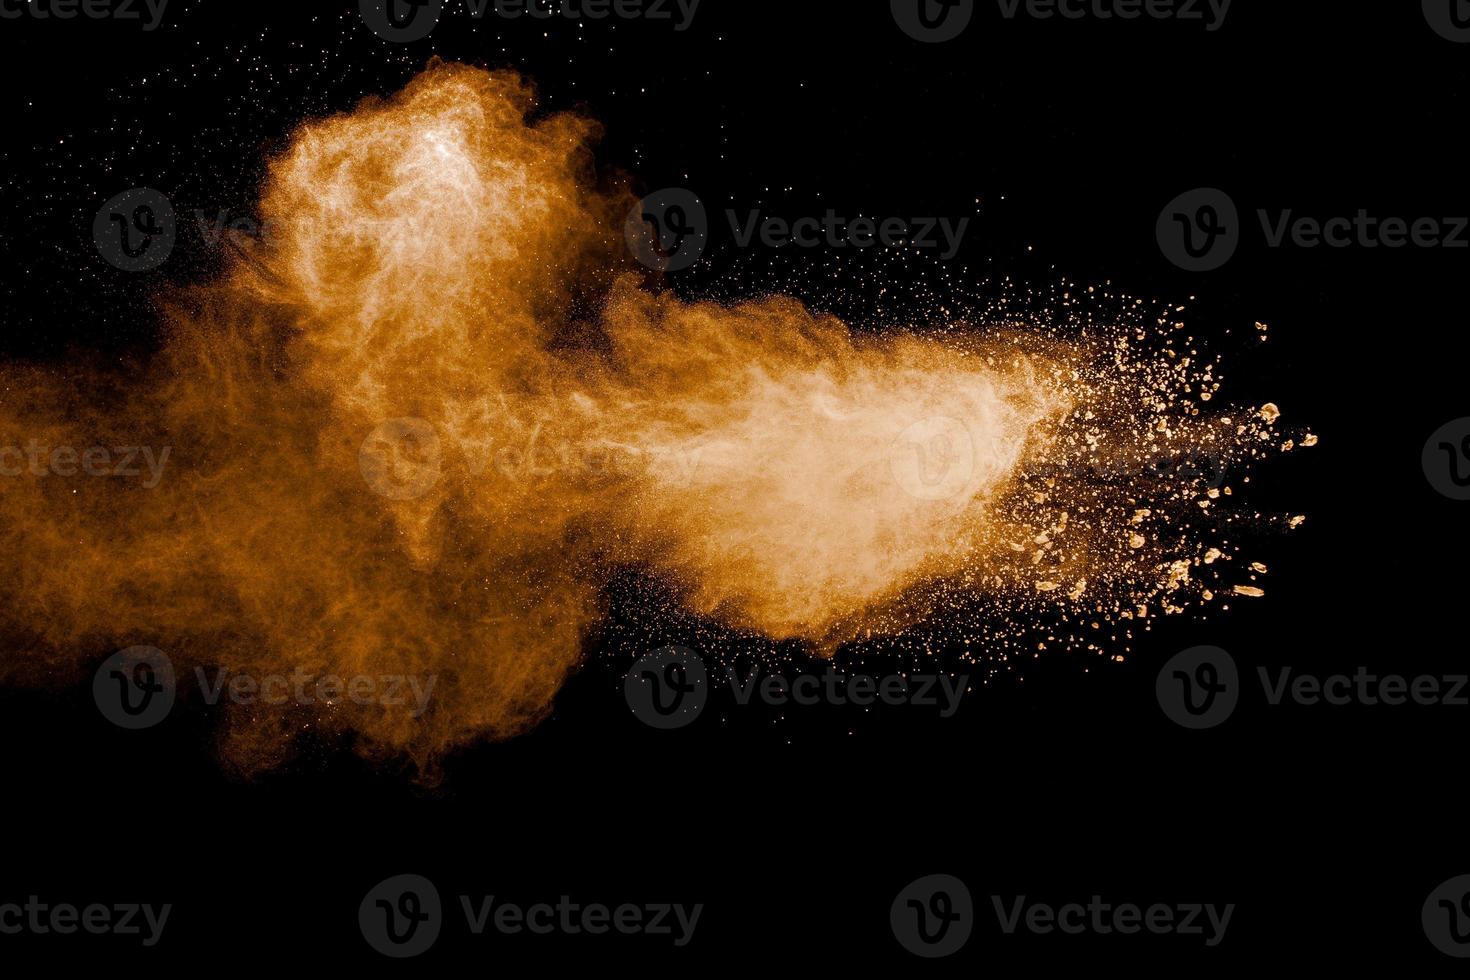 bewegung der braunen staubexplosion einfrieren. die bewegung des braunen pulvers stoppen. explosives braunes pulver auf schwarzem hintergrund. foto